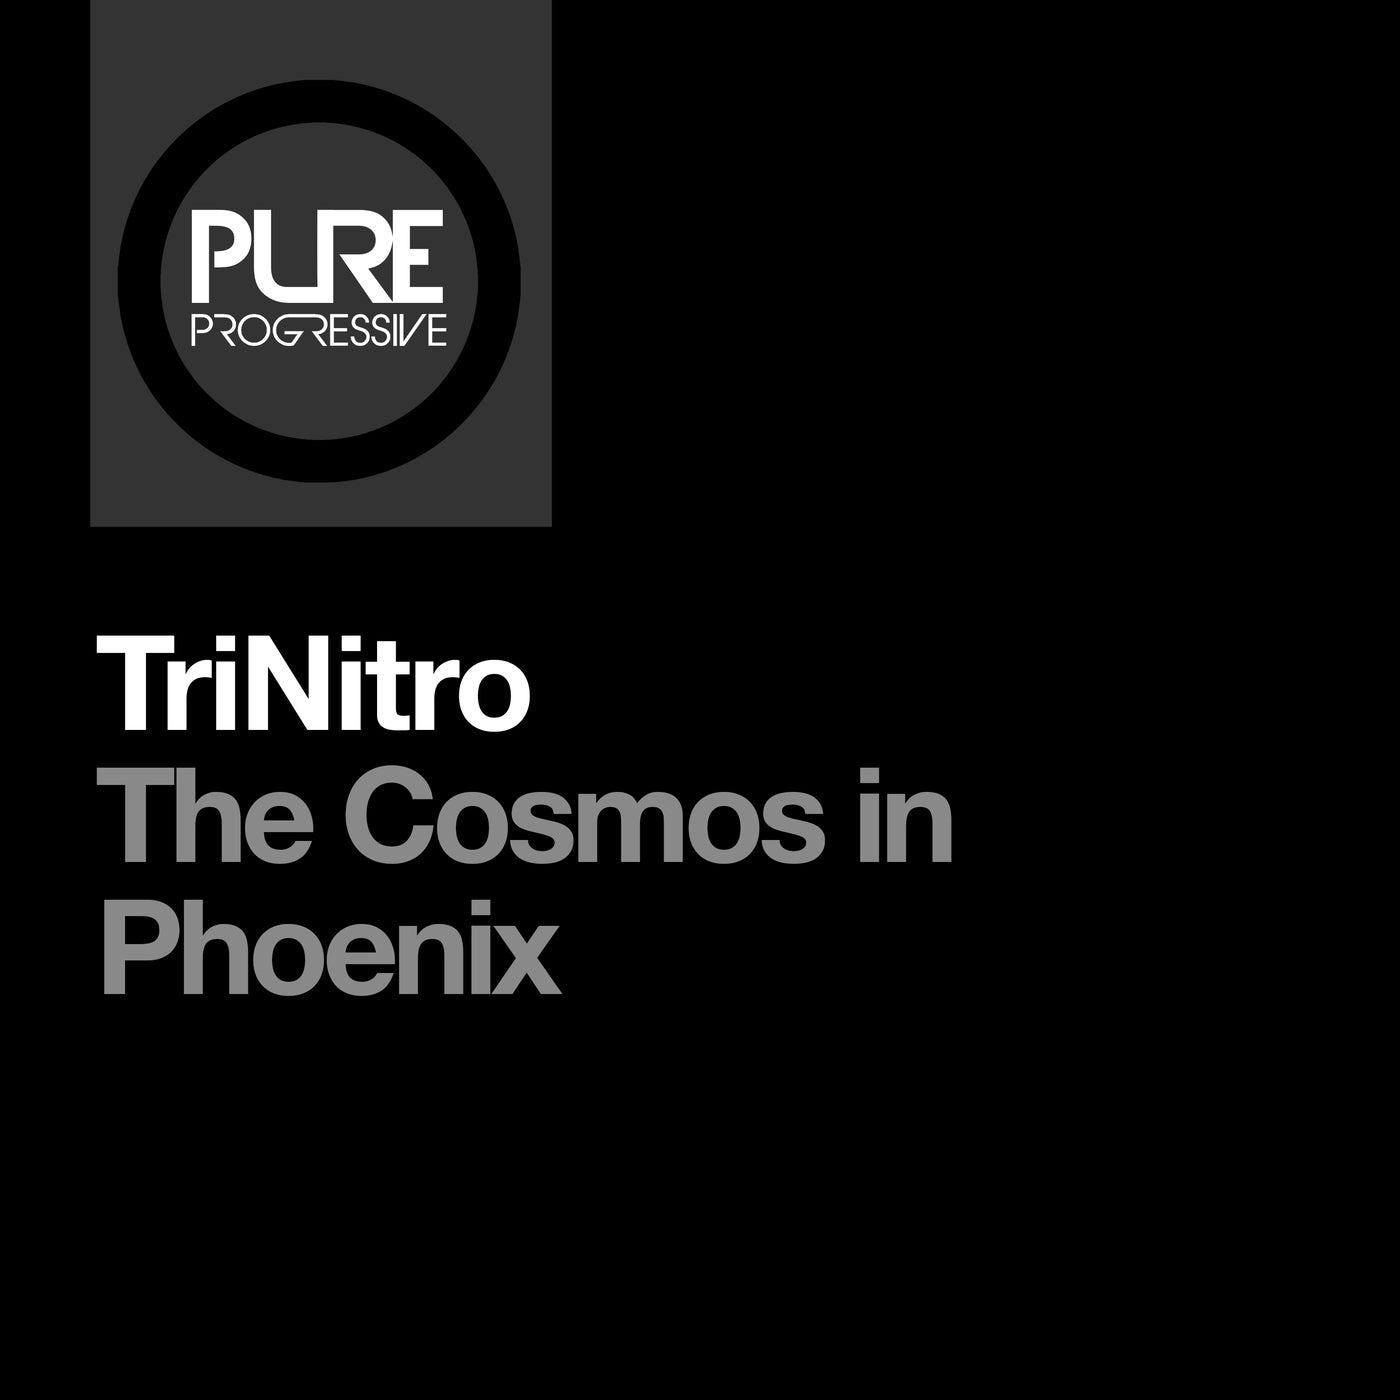 The Cosmos in Phoenix